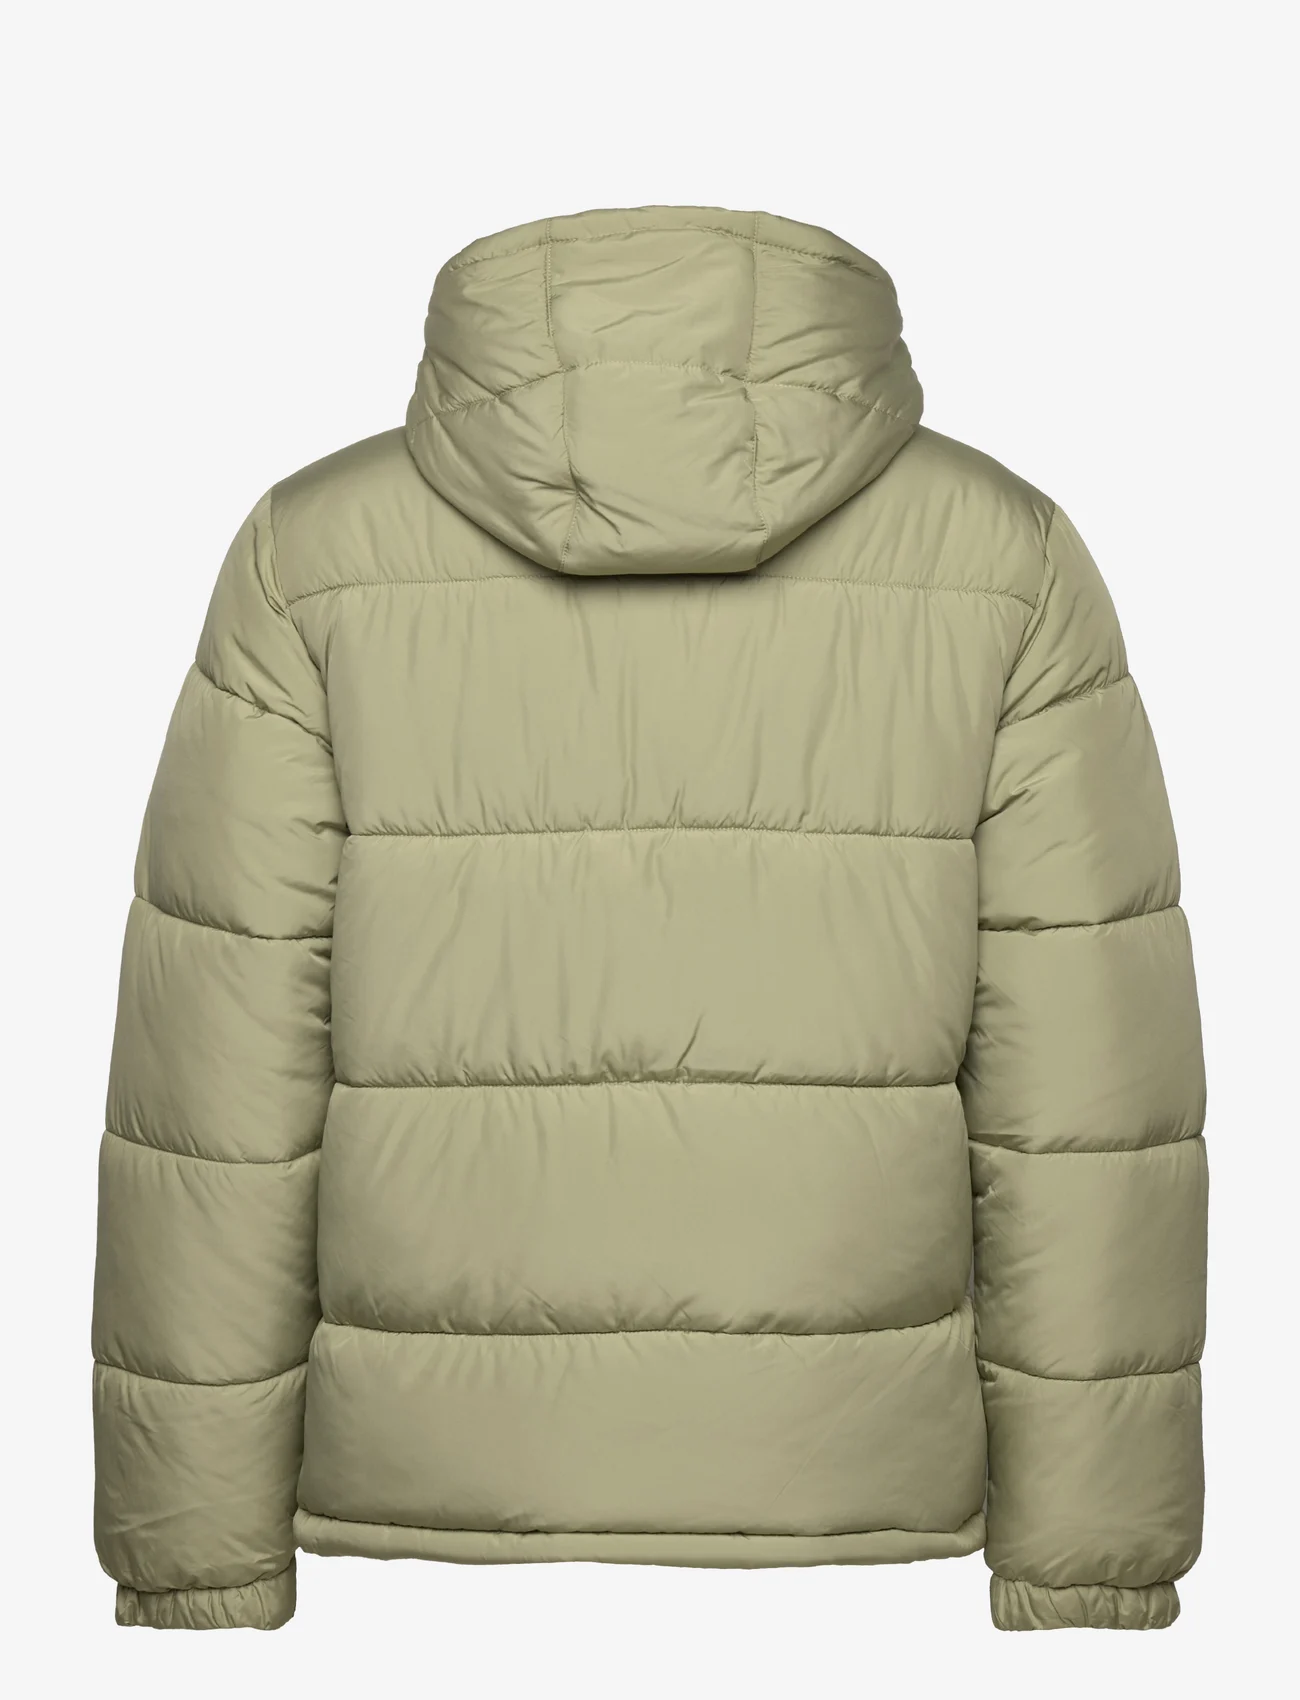 FILA - BENSHEIM - winter jackets - oil green - 1